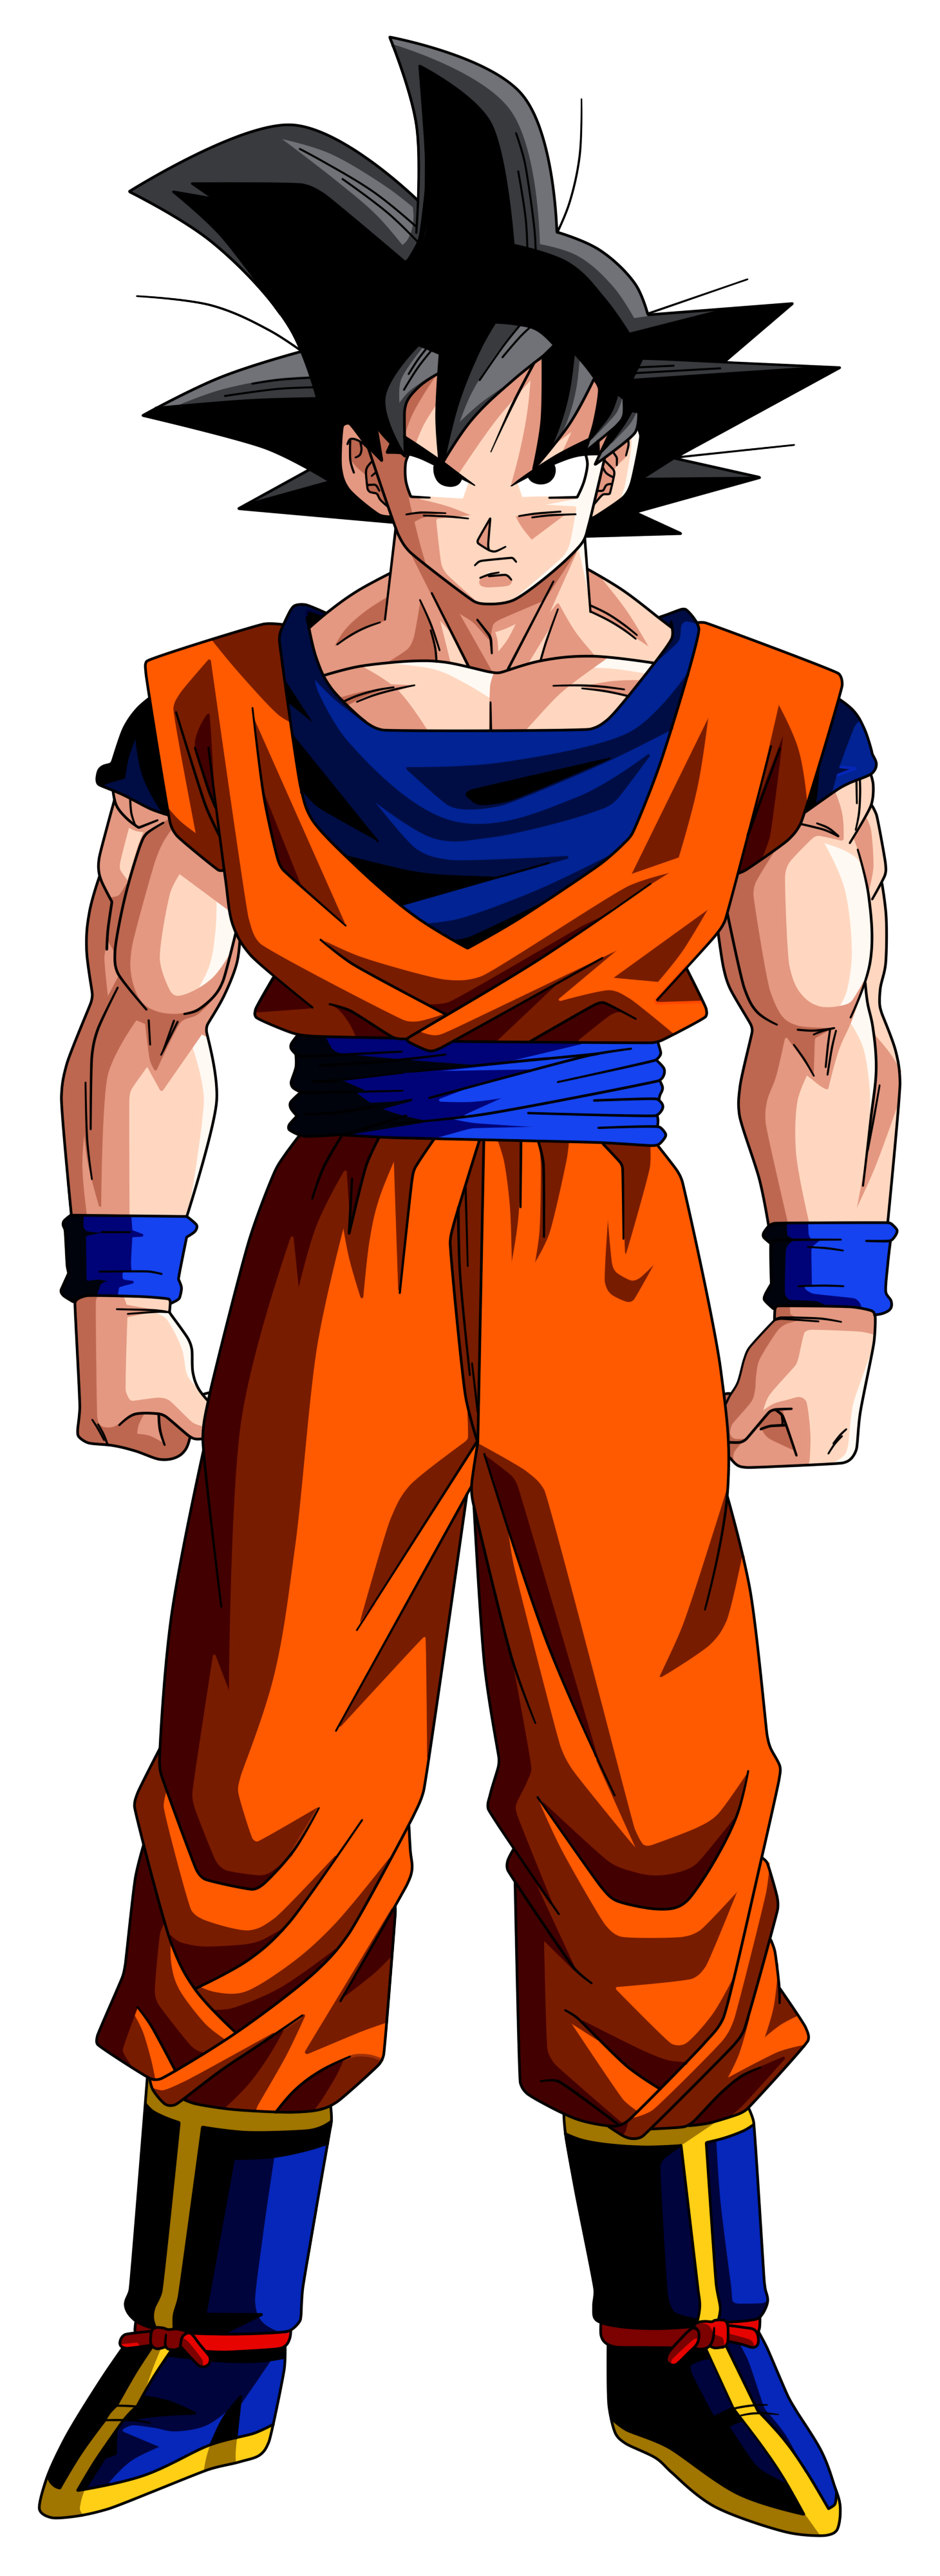 Dragon Ball Goku Transparent Image PNG Image